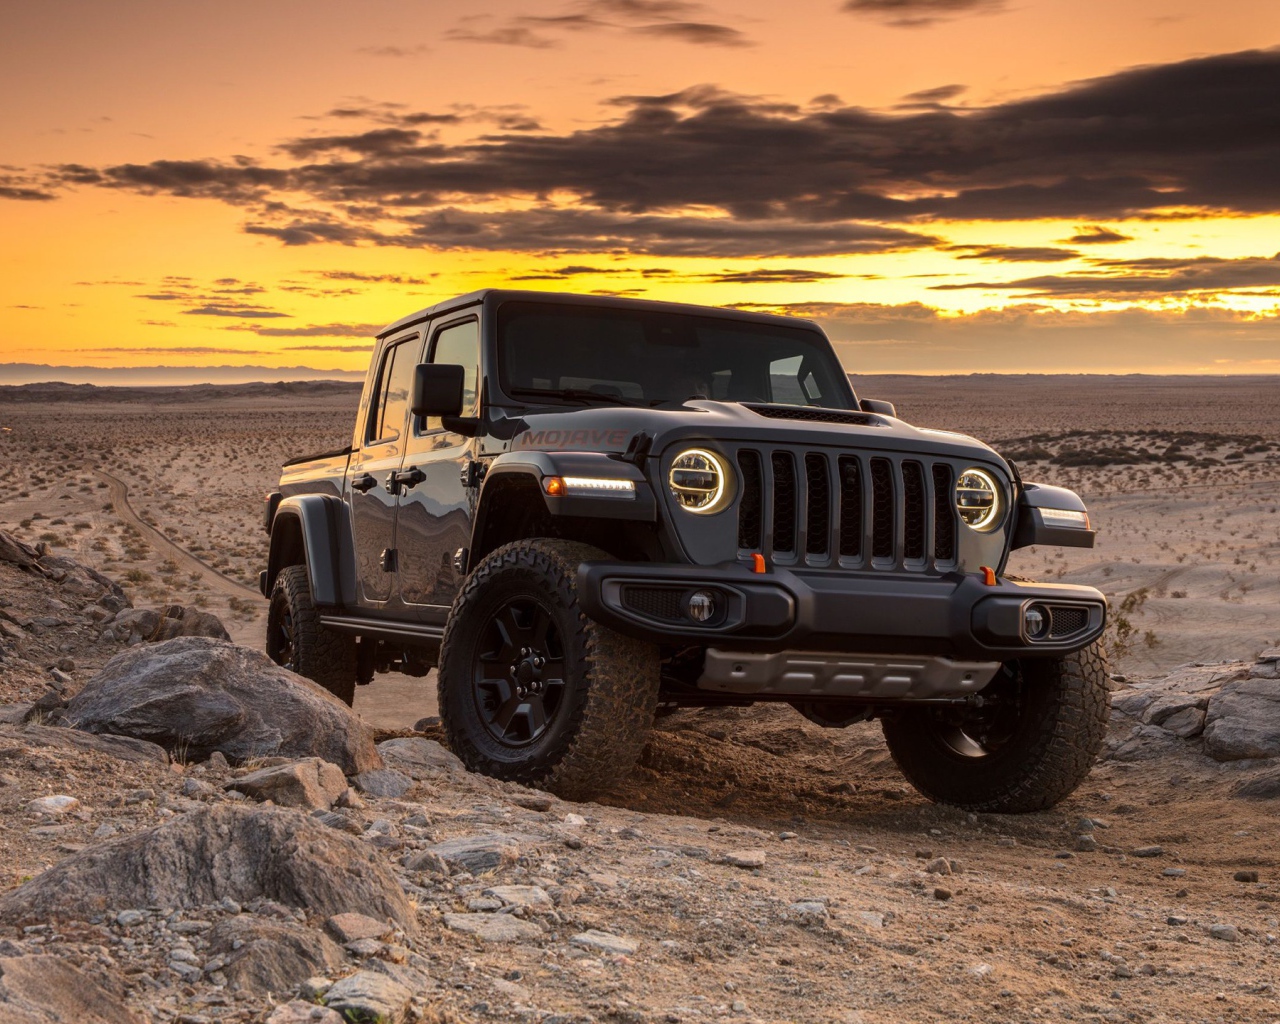 Черный внедорожник Jeep Gladiator Mojave, 2020 года в пустыне на закате